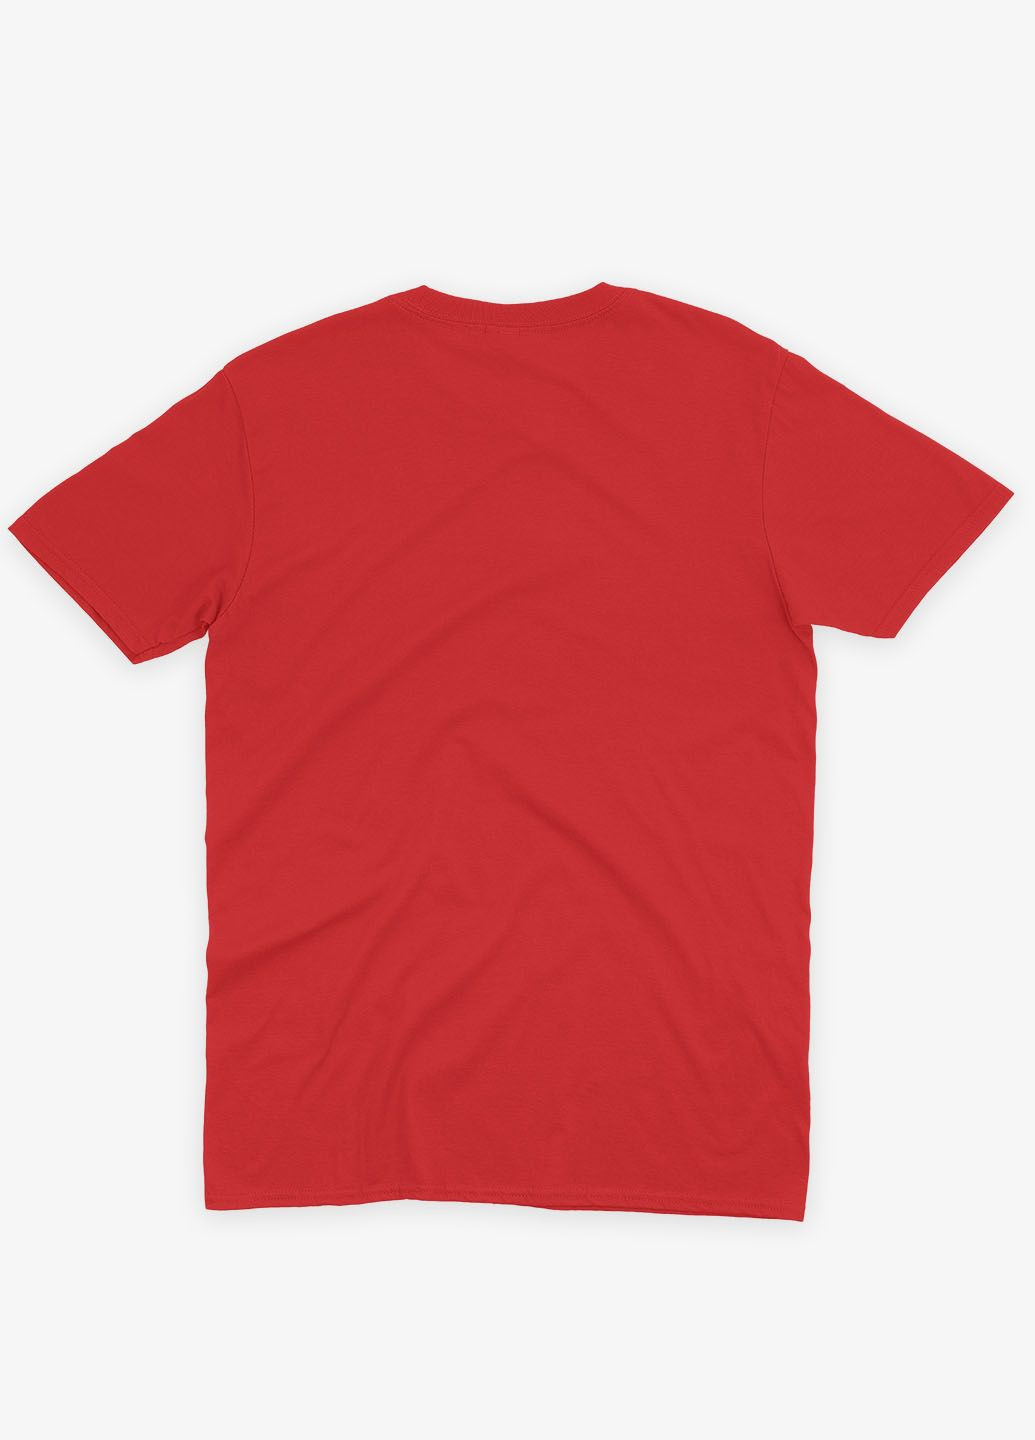 Красная демисезонная футболка для девочки с принтом супервора - веном (ts001-1-sre-006-013-003-g) Modno